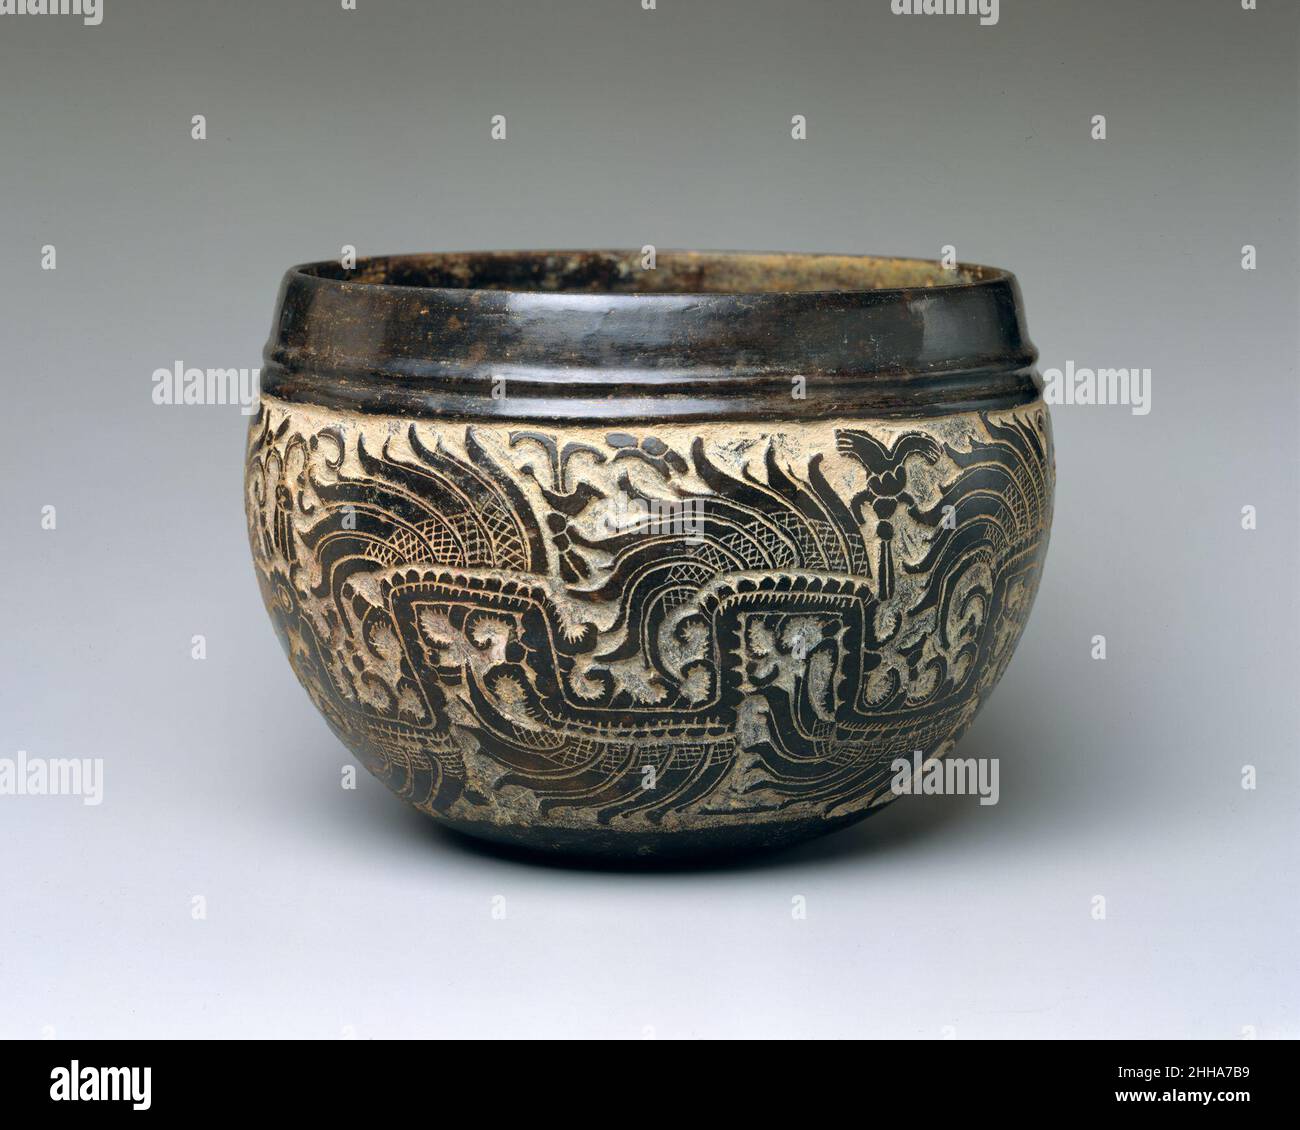 Bol sculpté 6th Century Maya ce magnifique bol en noircissement est décoré  de serpents à plumes sculptés et incisés.Les figures humaines du profil  sont placées devant leurs mâchoires barbes.Les corps des serpents